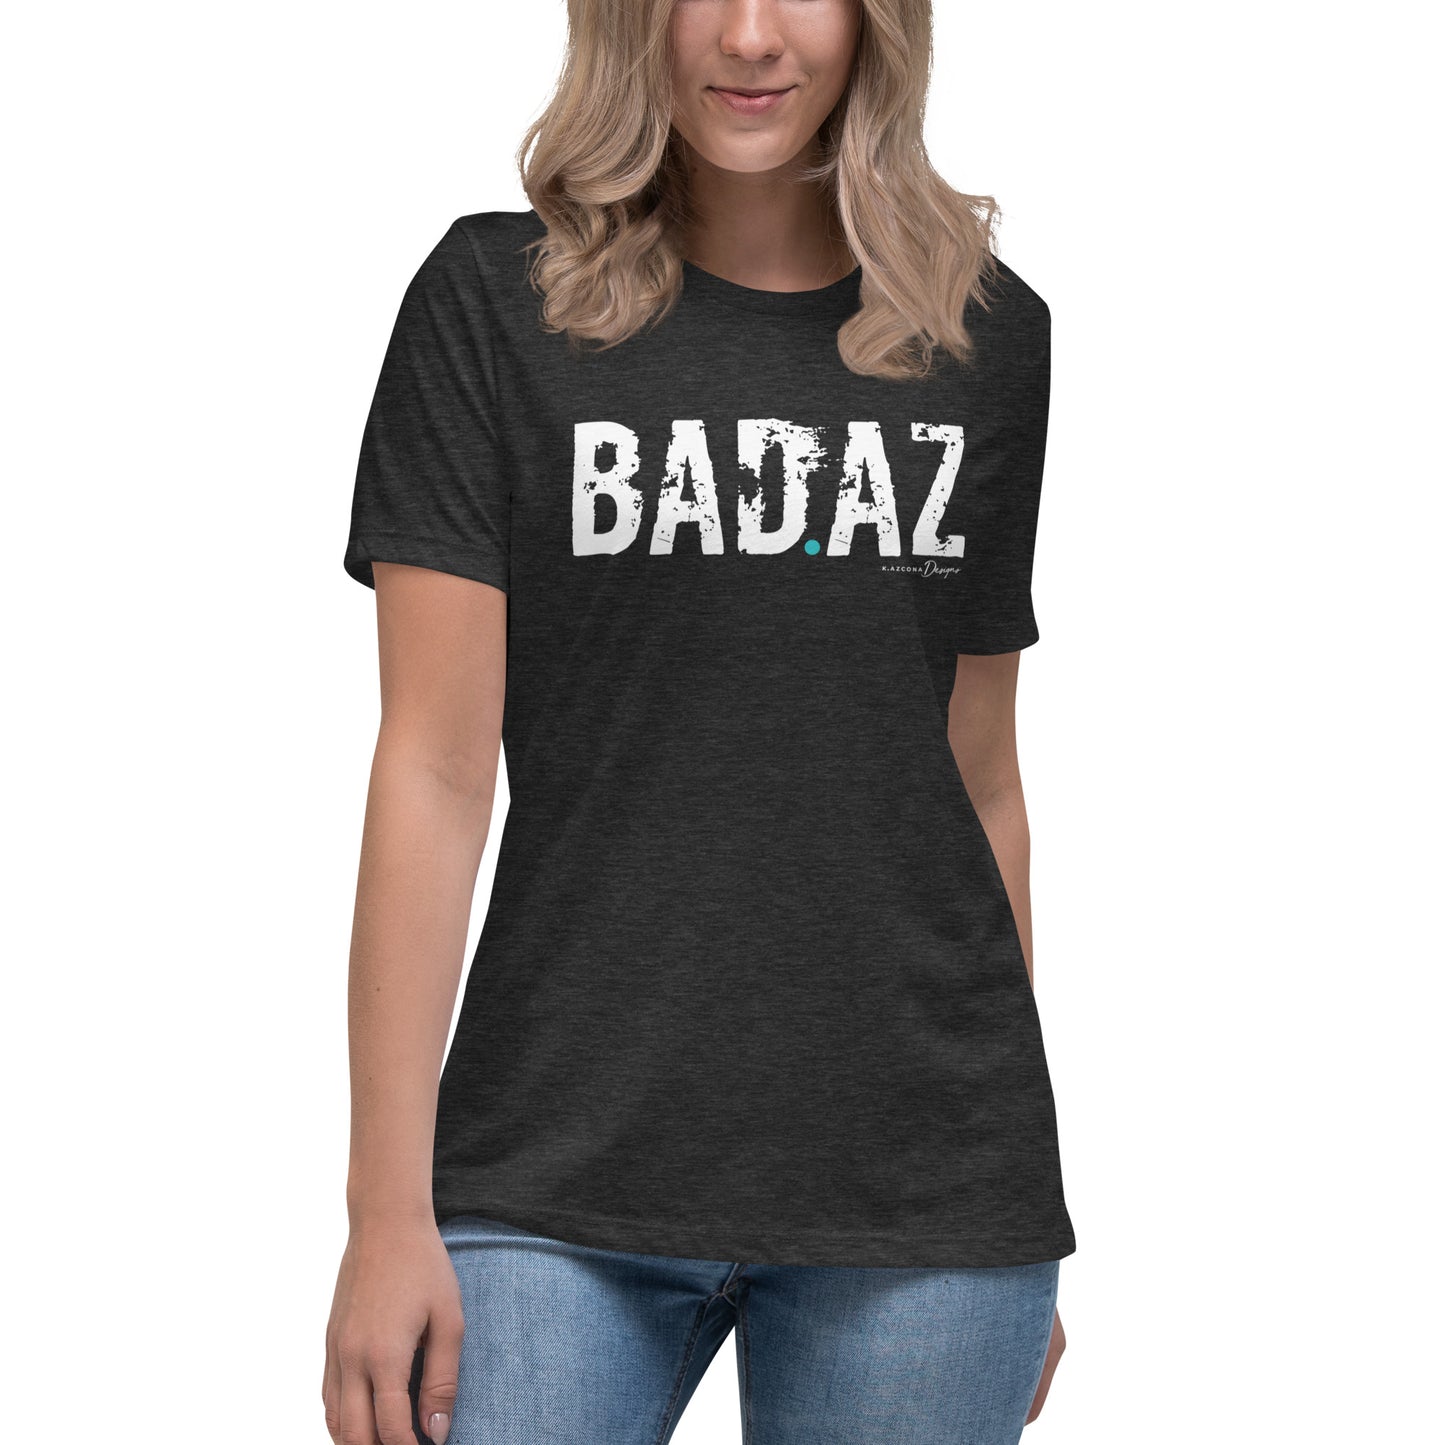 BAZ.AZ Women's Relaxed T-Shirt